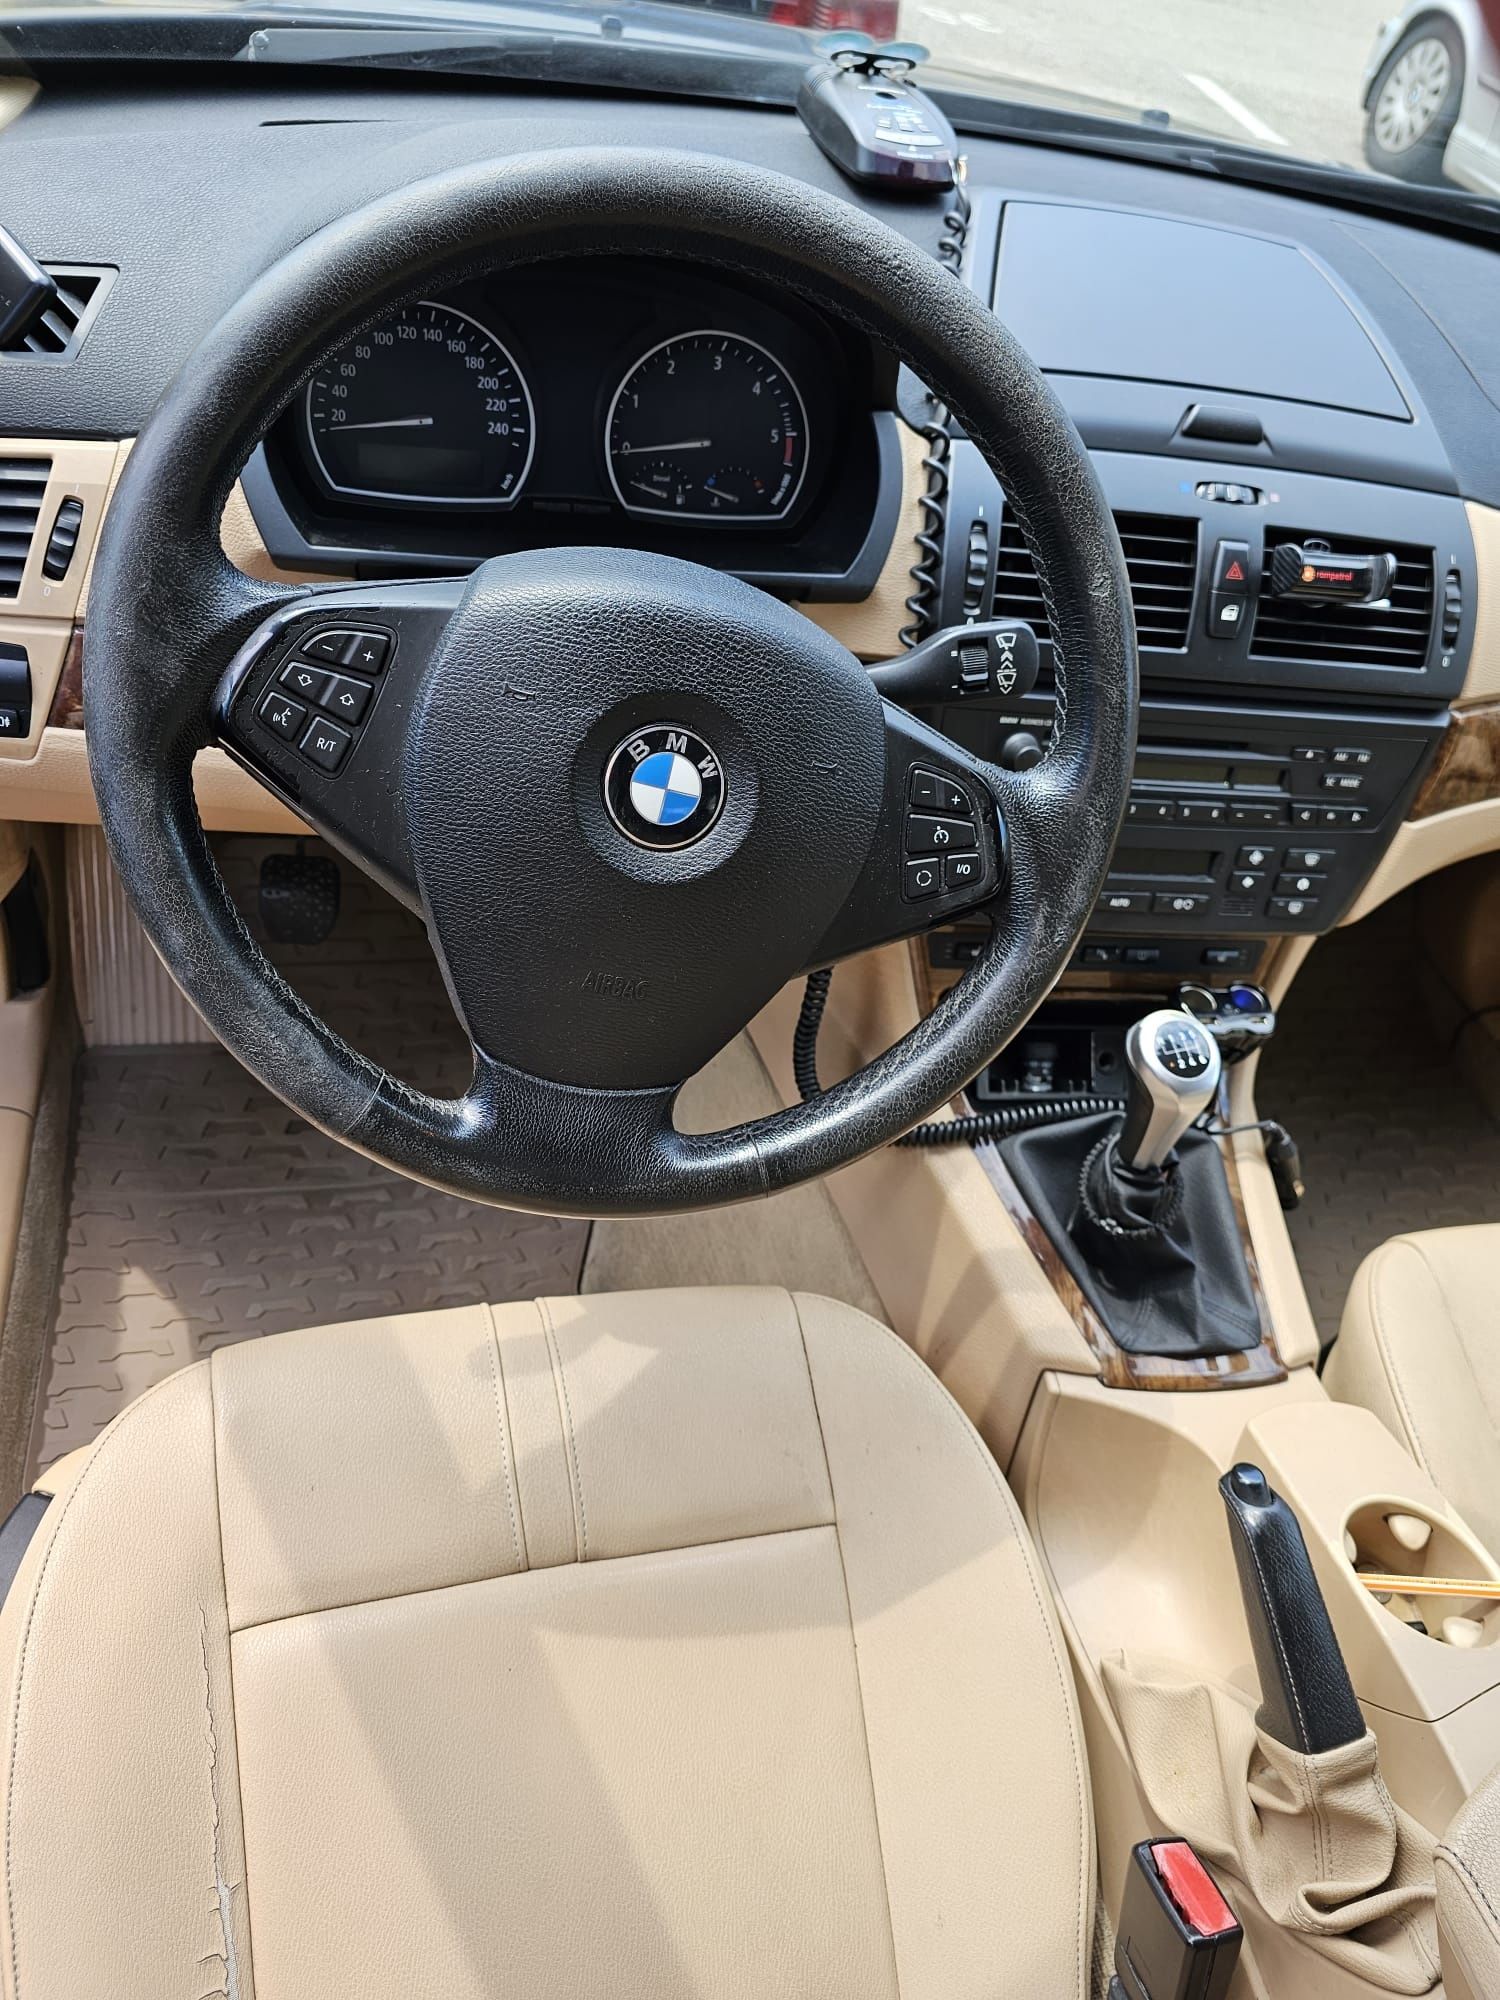 BMW X3 2.0D 2007 E83, 150 CP, 4x4, Manual, Euro 4